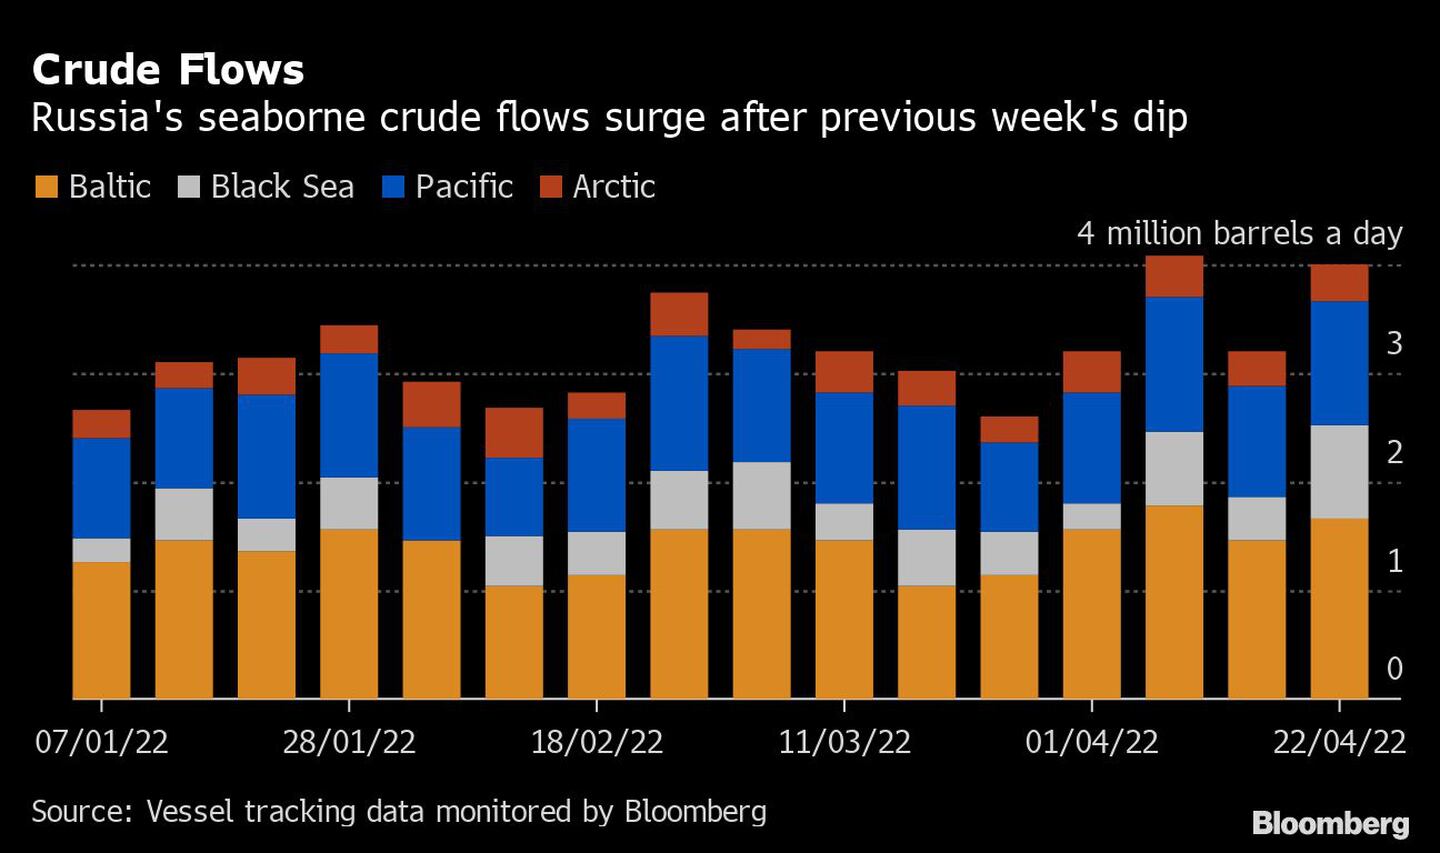 Los flujos de crudo por vía marítima de Rusia aumentan tras la caída de la semana anteriordfd